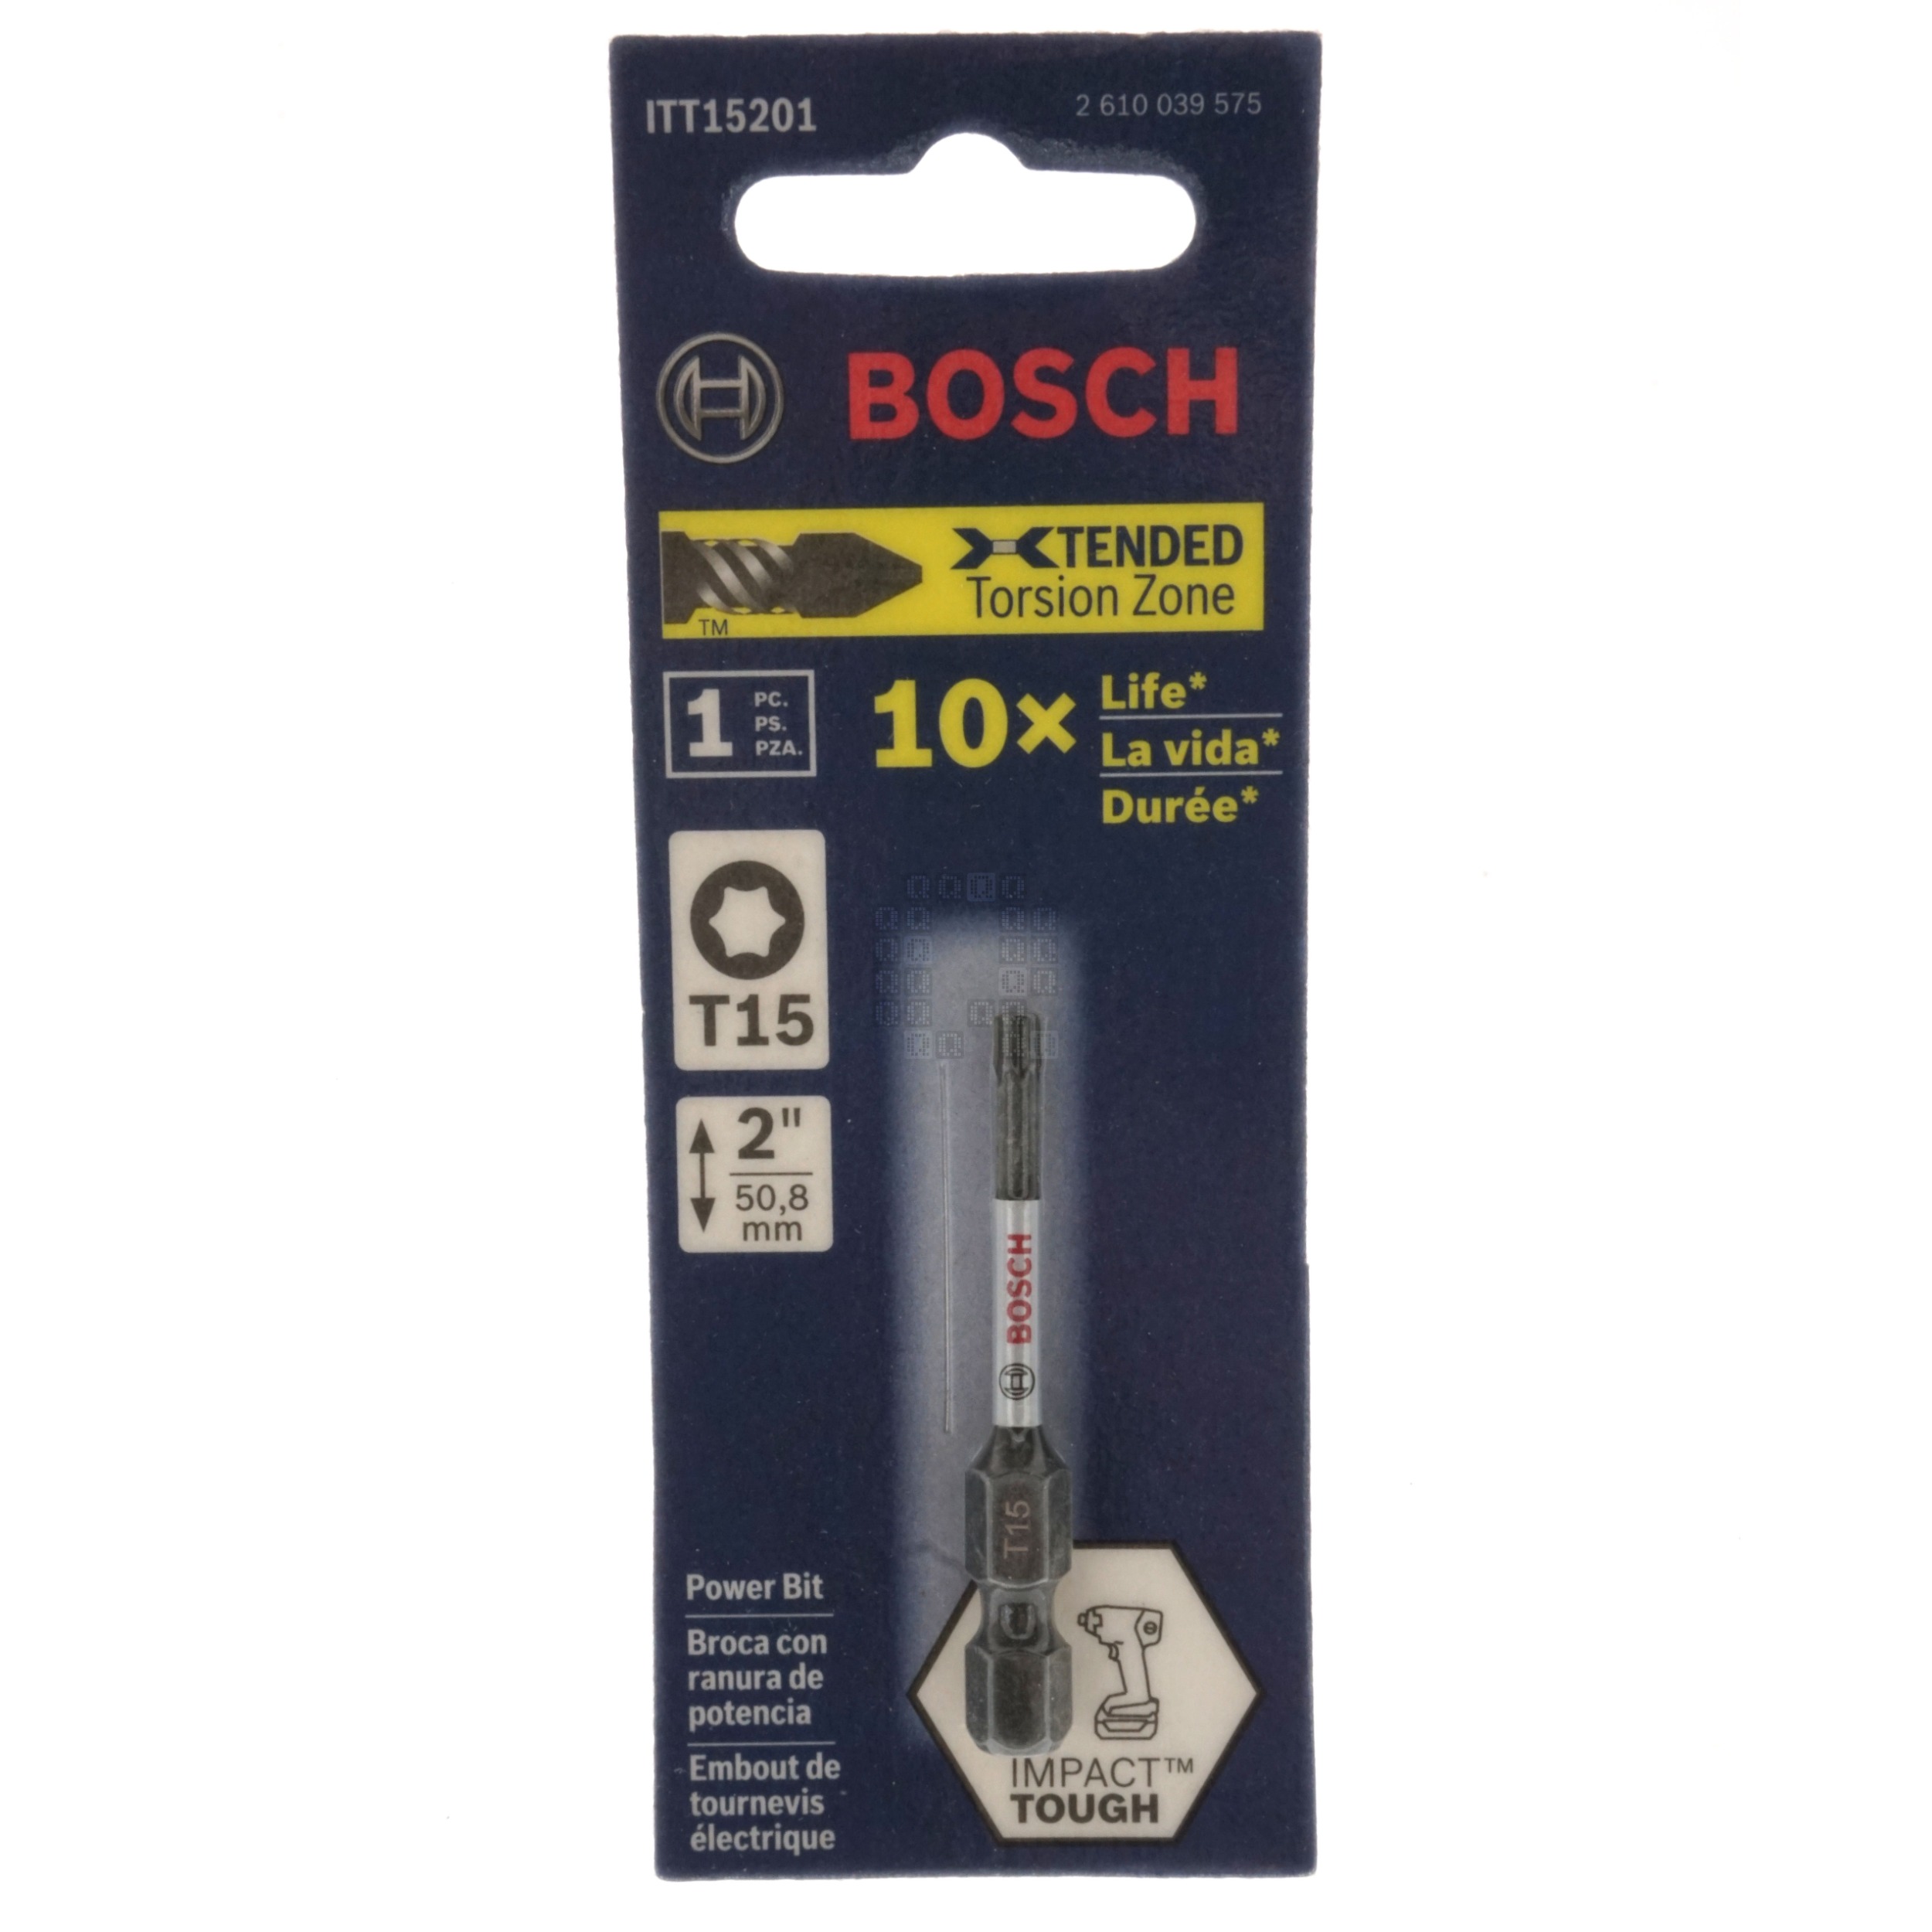 Bosch ITT15201 Impact Tough T15 TORX Insert Power Bit, 2" Length, 2610039575